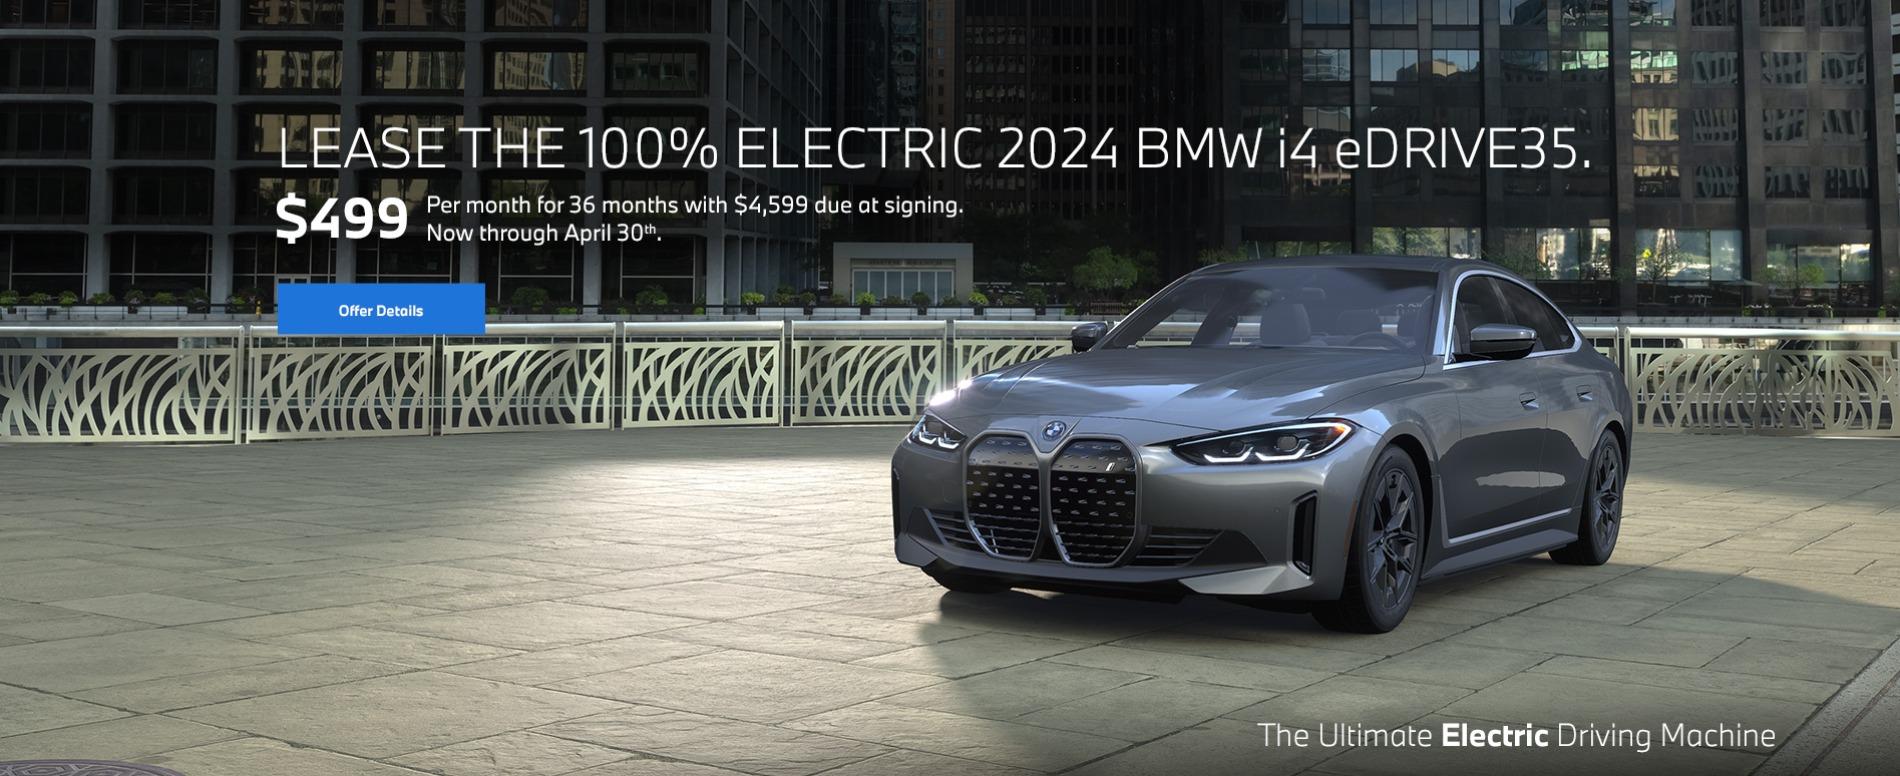 Lease the 100% electric 2024 bmw i4 eDrive35